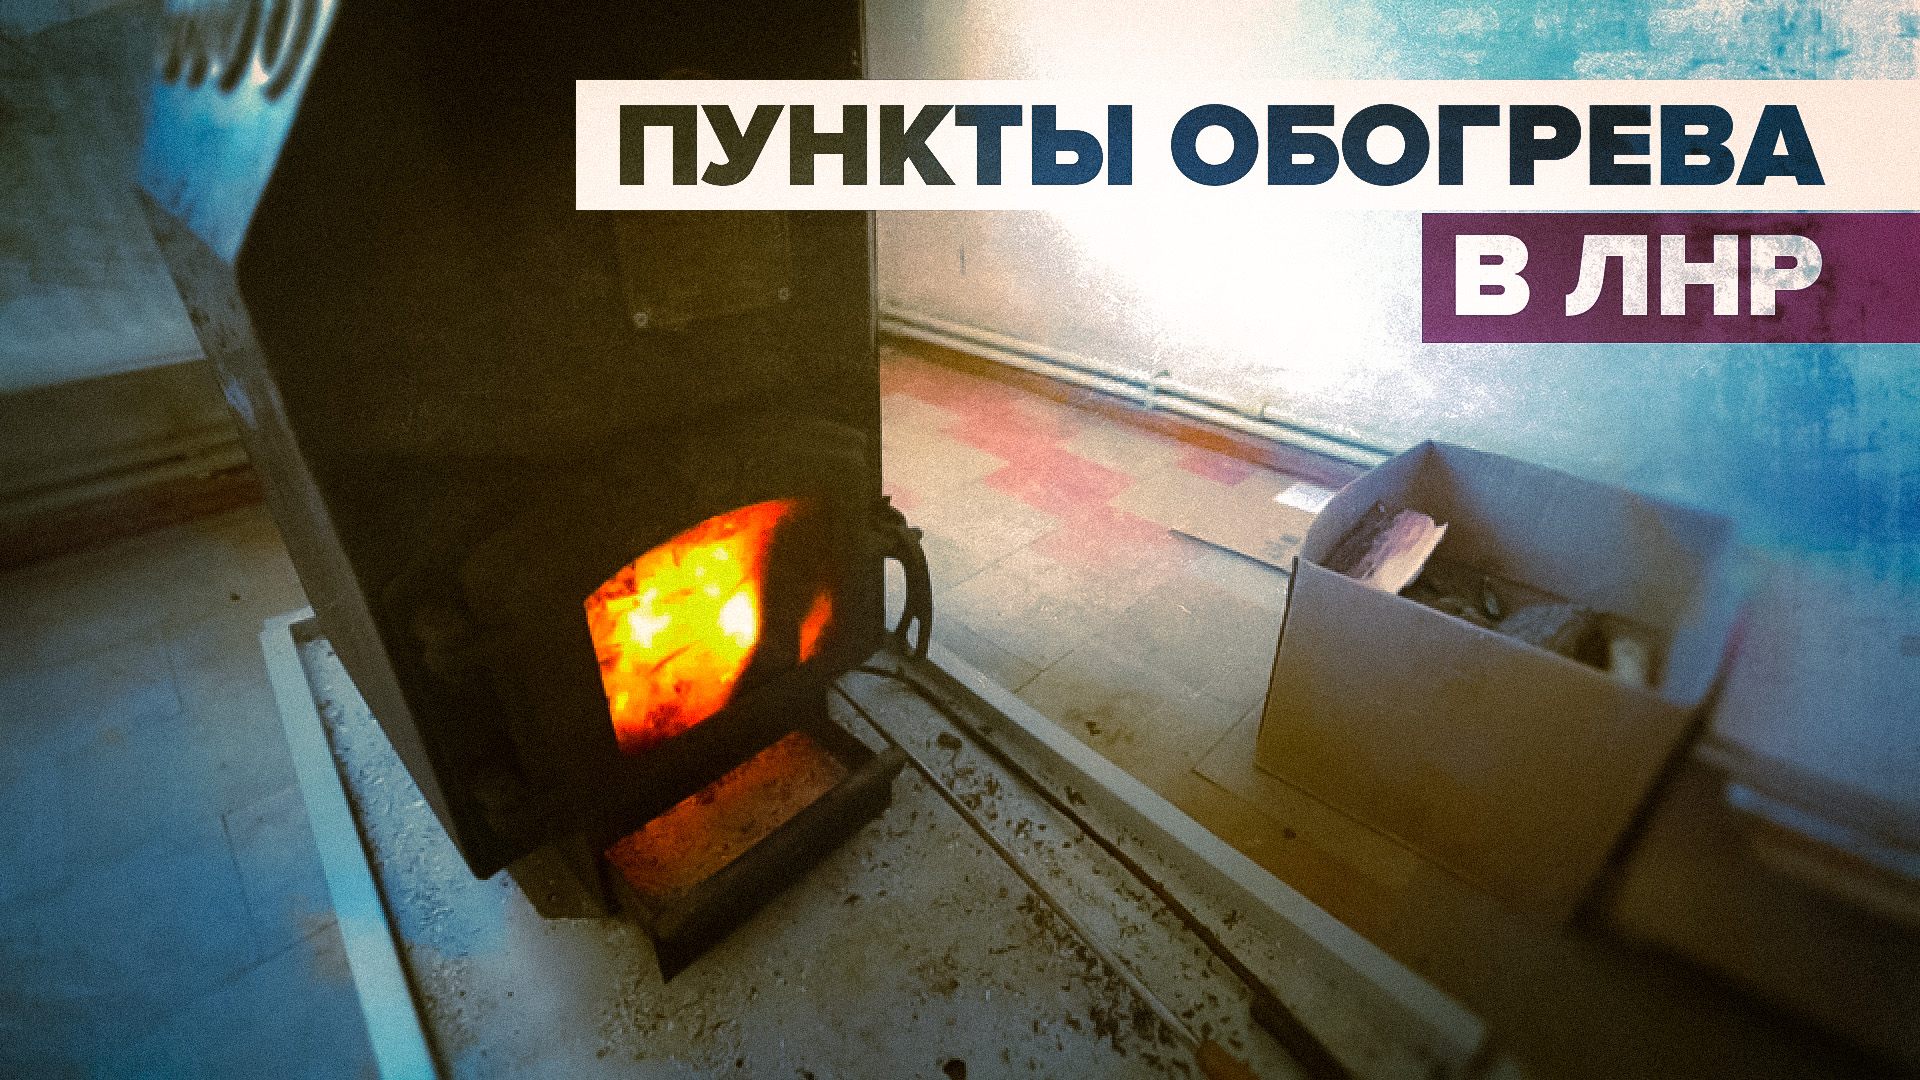 Сберечь тепло: как работают пункты обогрева в городах ЛНР